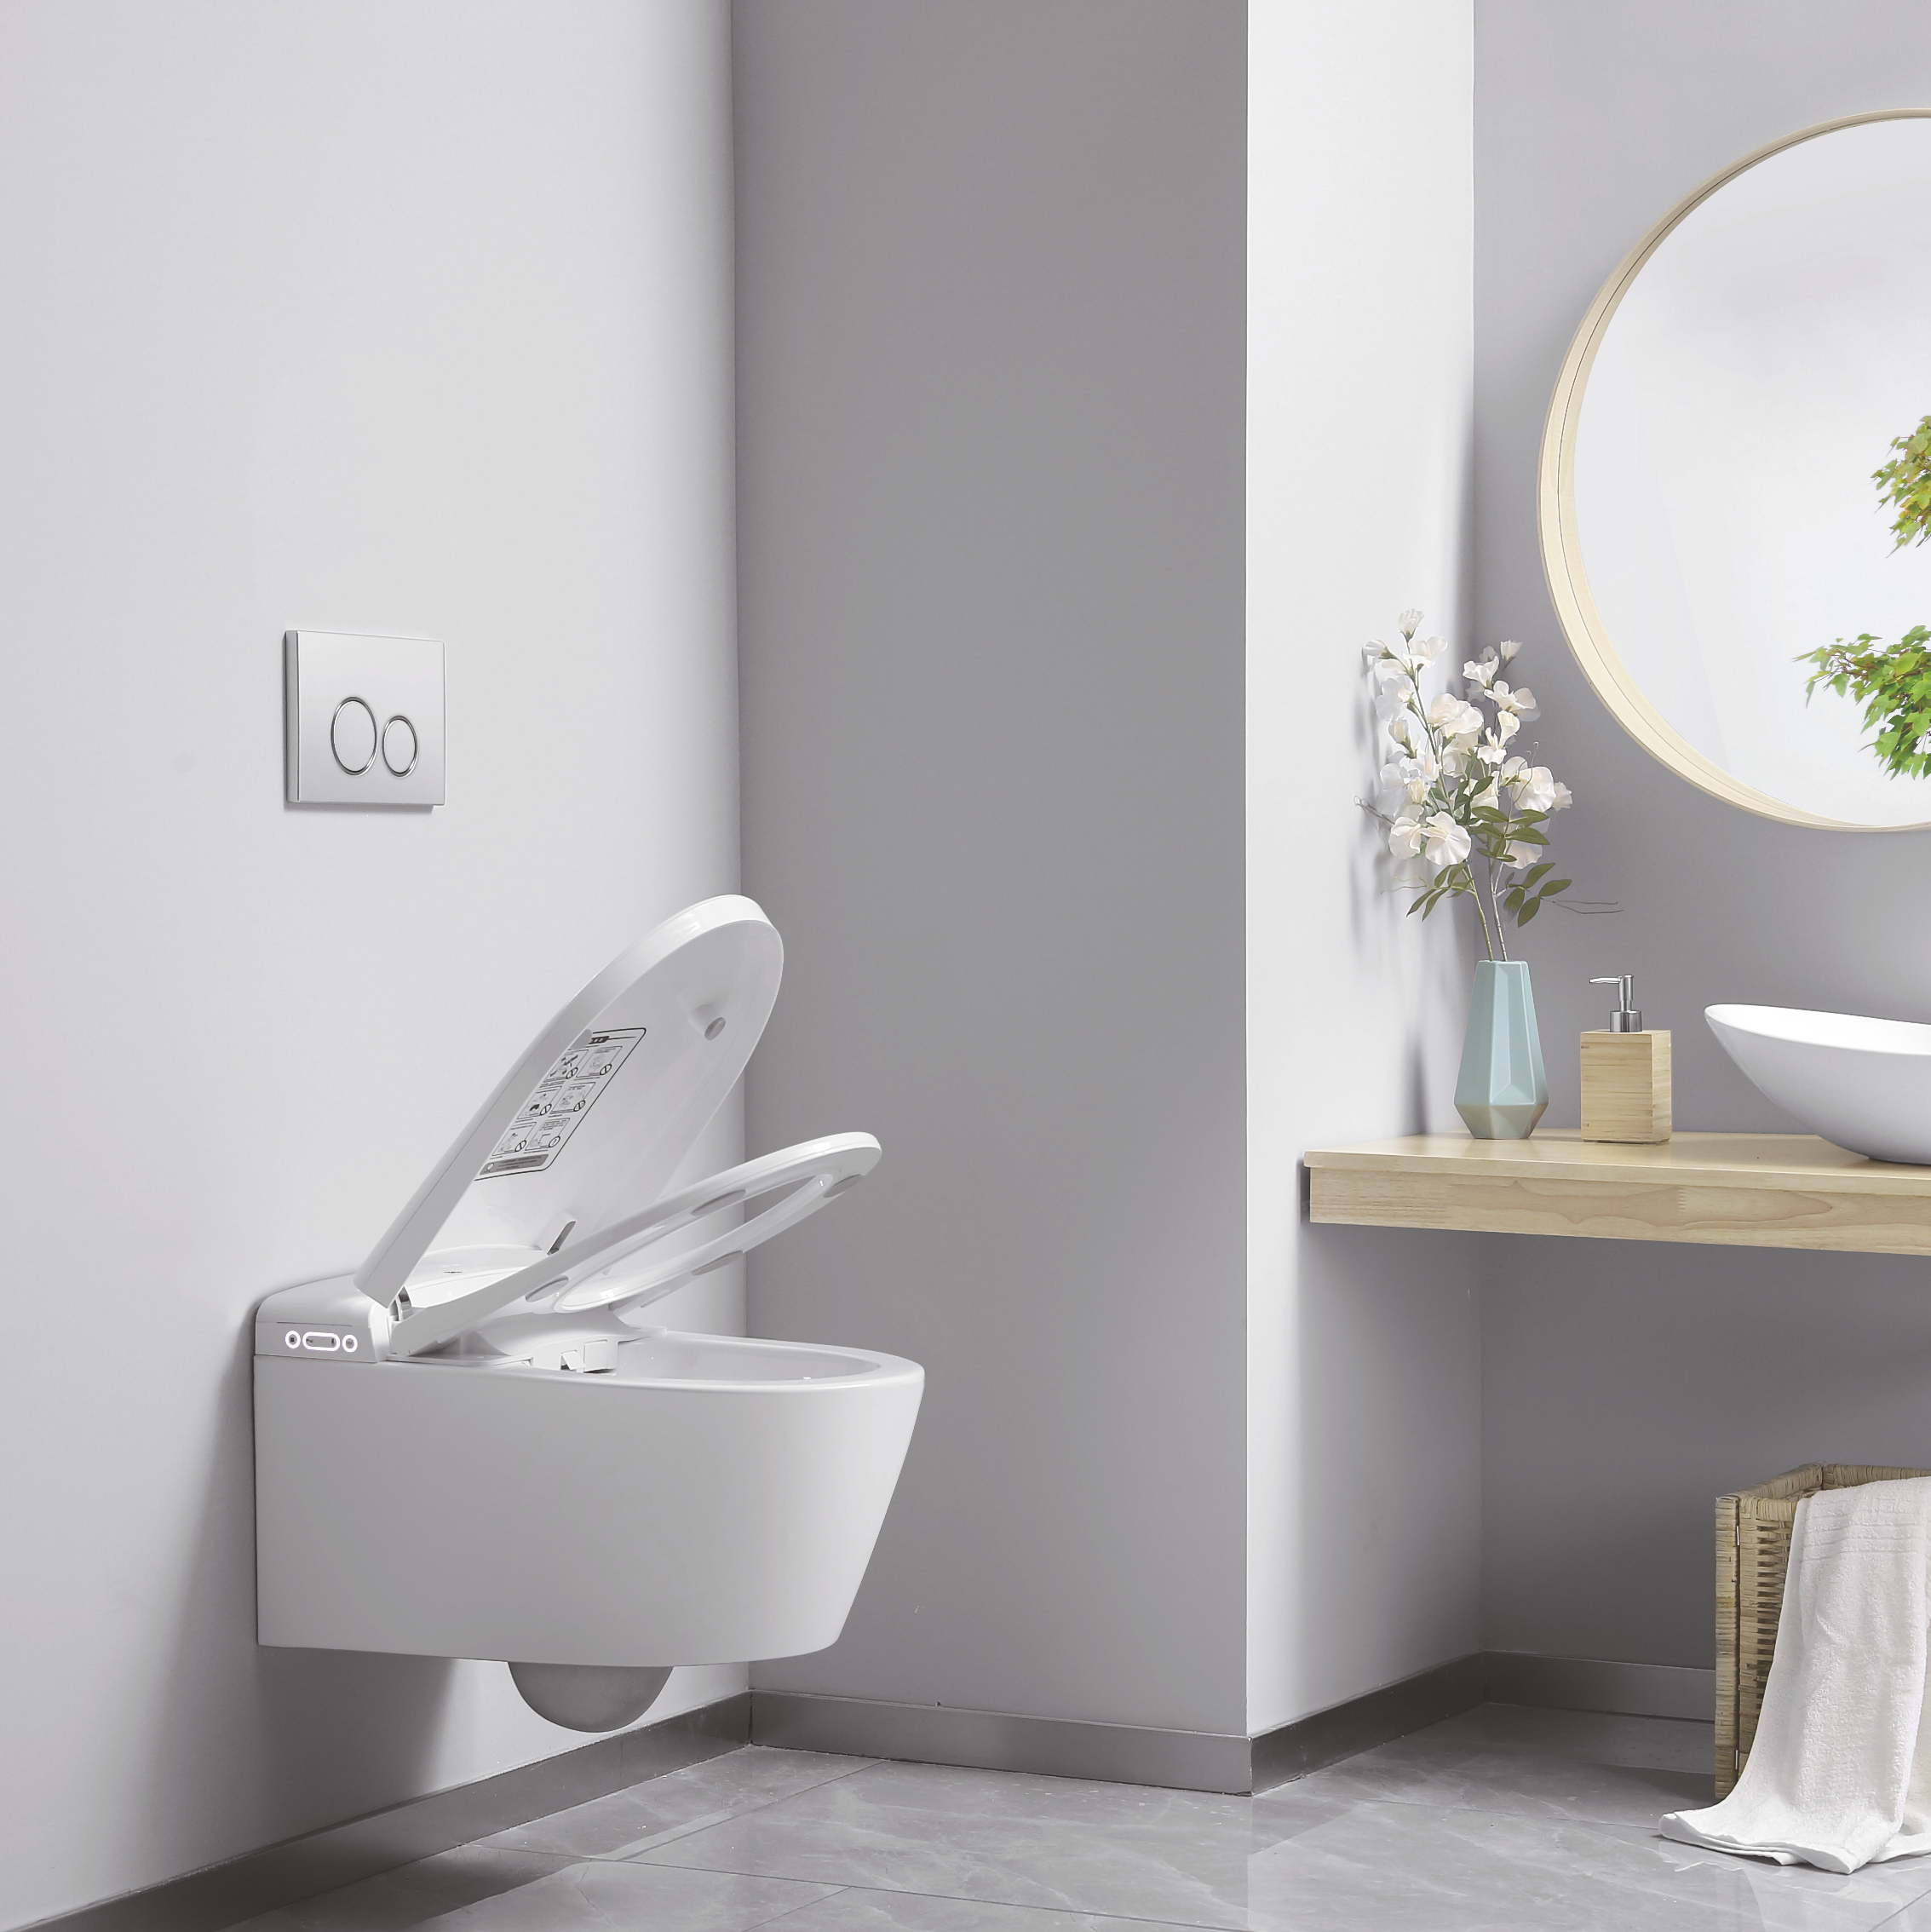 Toaleta Myjąca SUPERIOR wersja podwieszana, elektroniczny bidet i podgrzewana toaleta Major&Maker